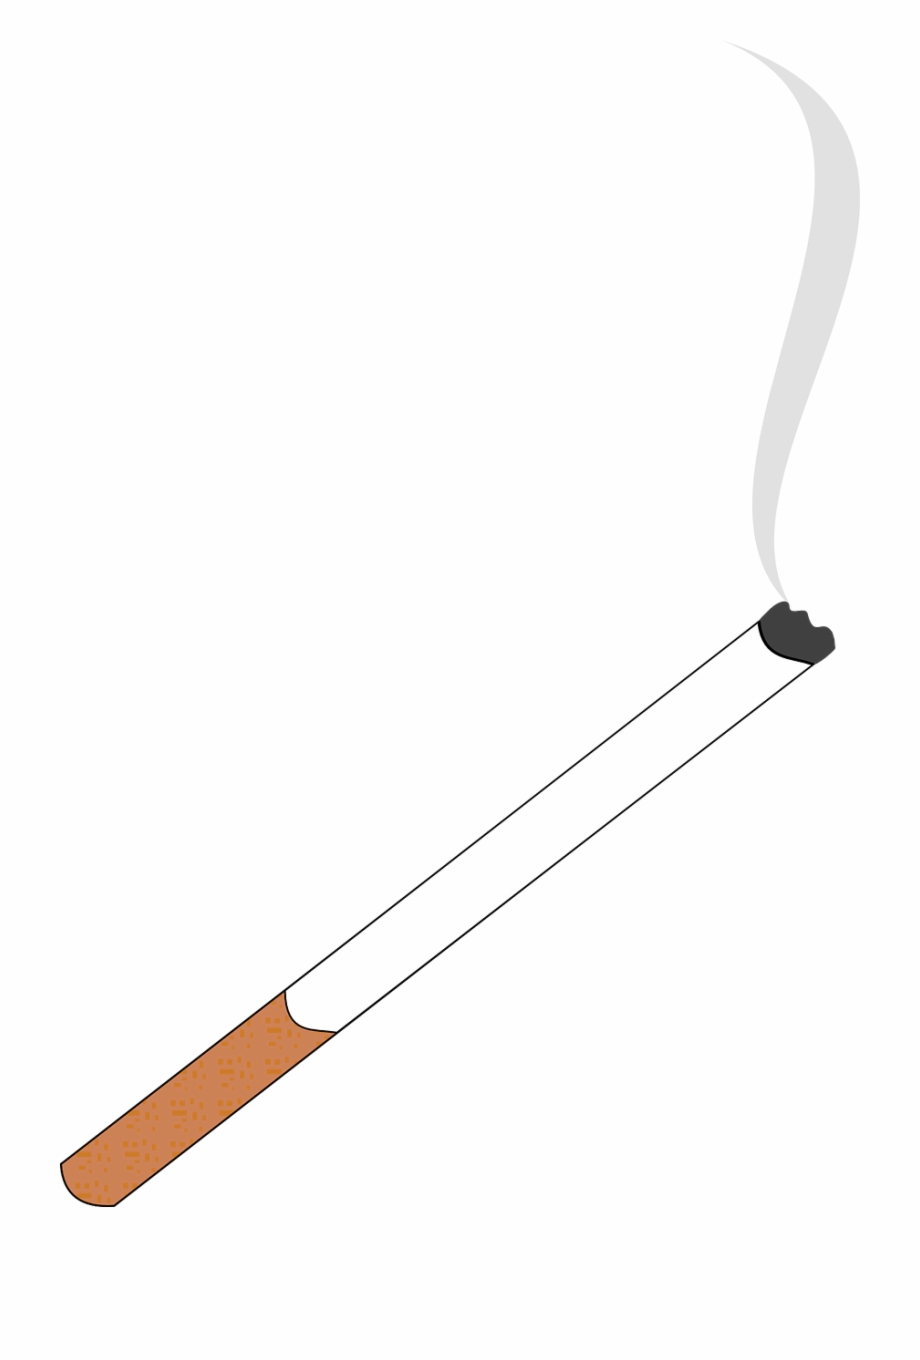 smoke clipart cigarette